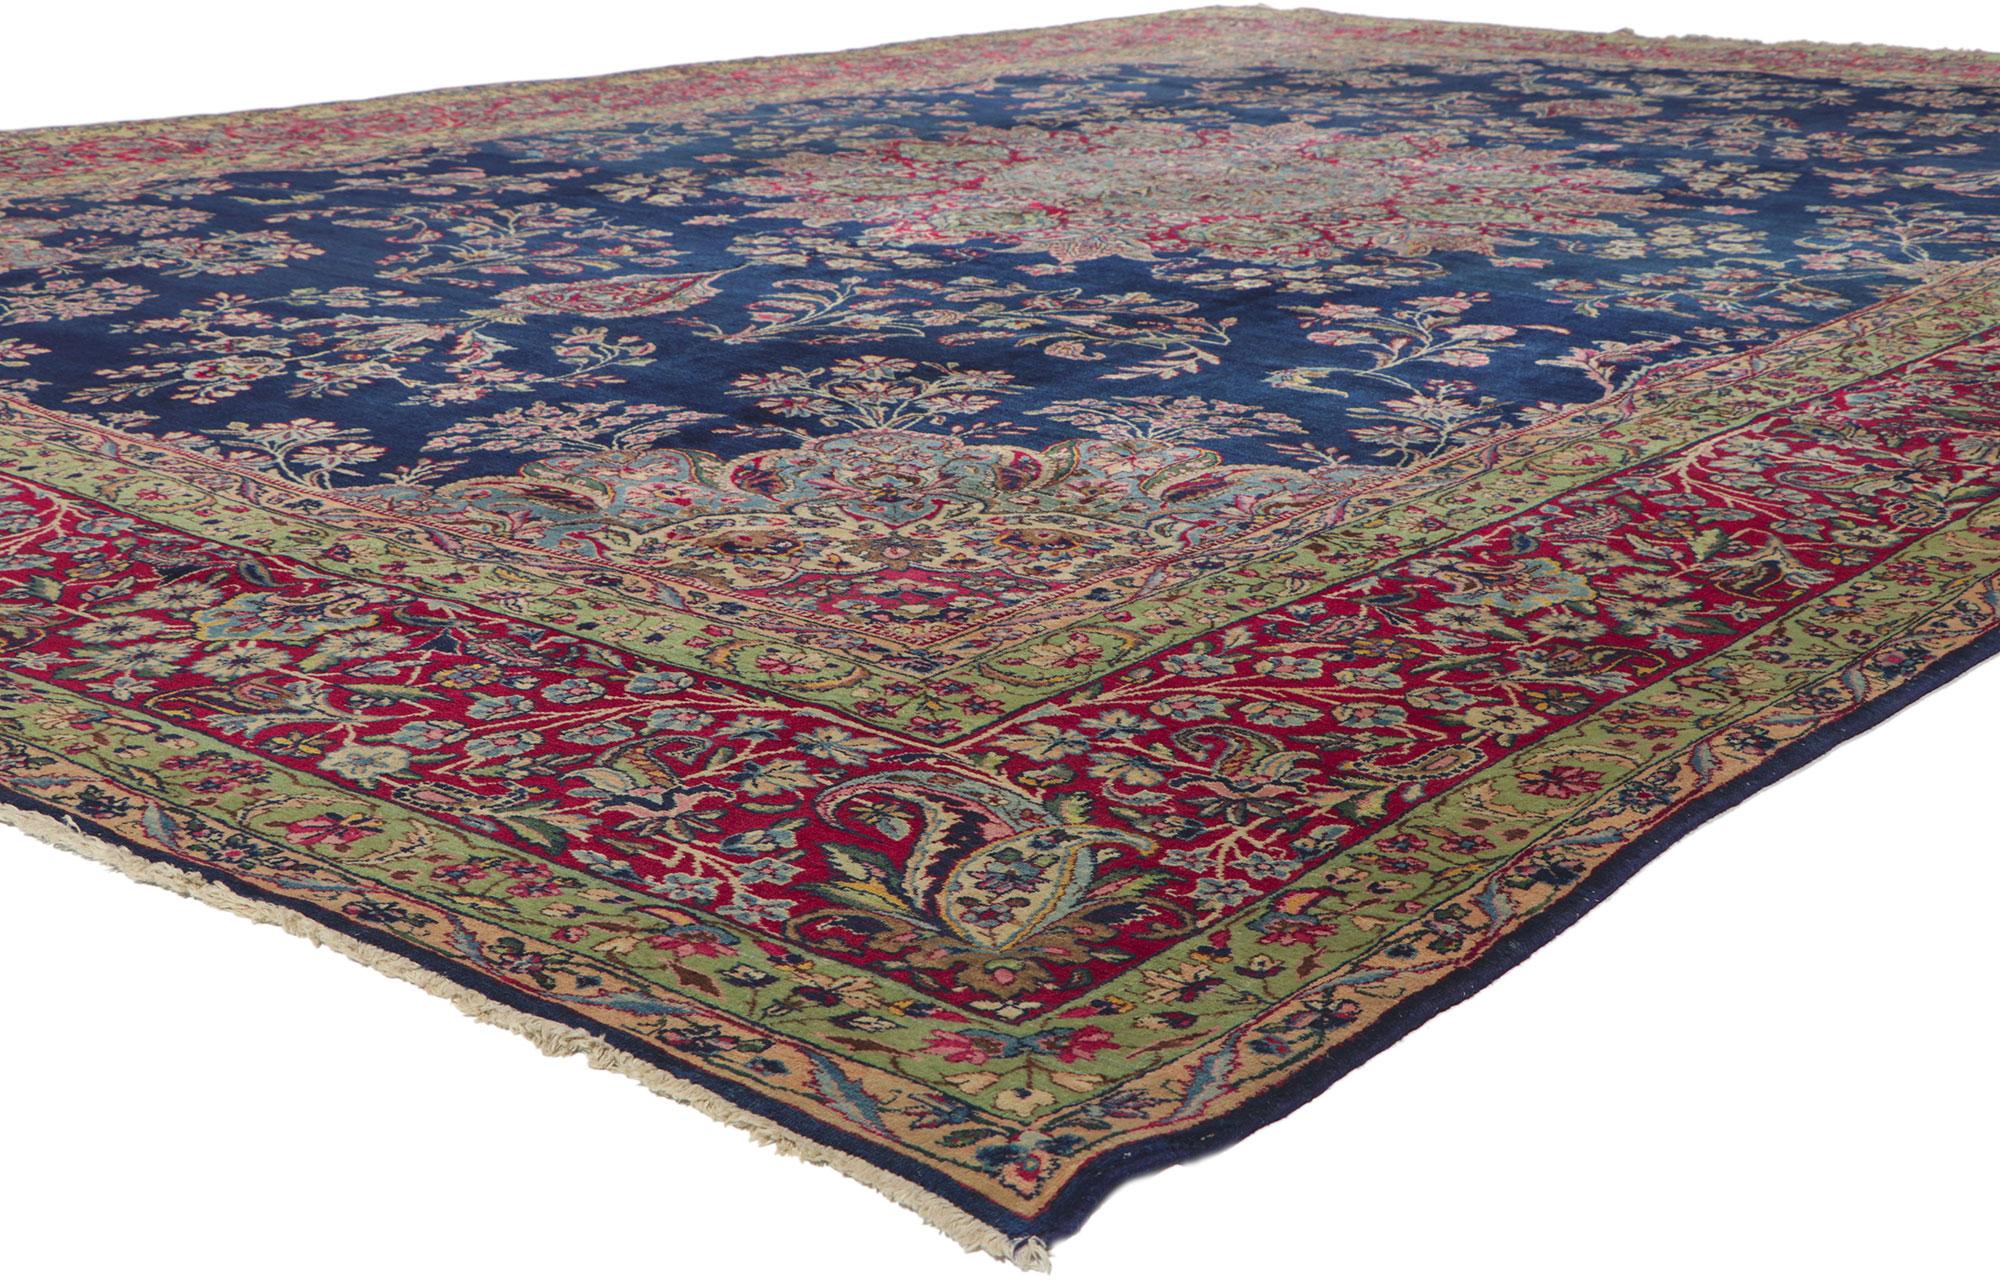 78336 Tapis Vintage By Kerman, 11'04 x 15'10. Présentant un éventail impressionnant d'éléments floraux avec des détails et une texture incroyables, ce tapis persan vintage Kerman noué à la main est une vision captivante de la beauté tissée. Le